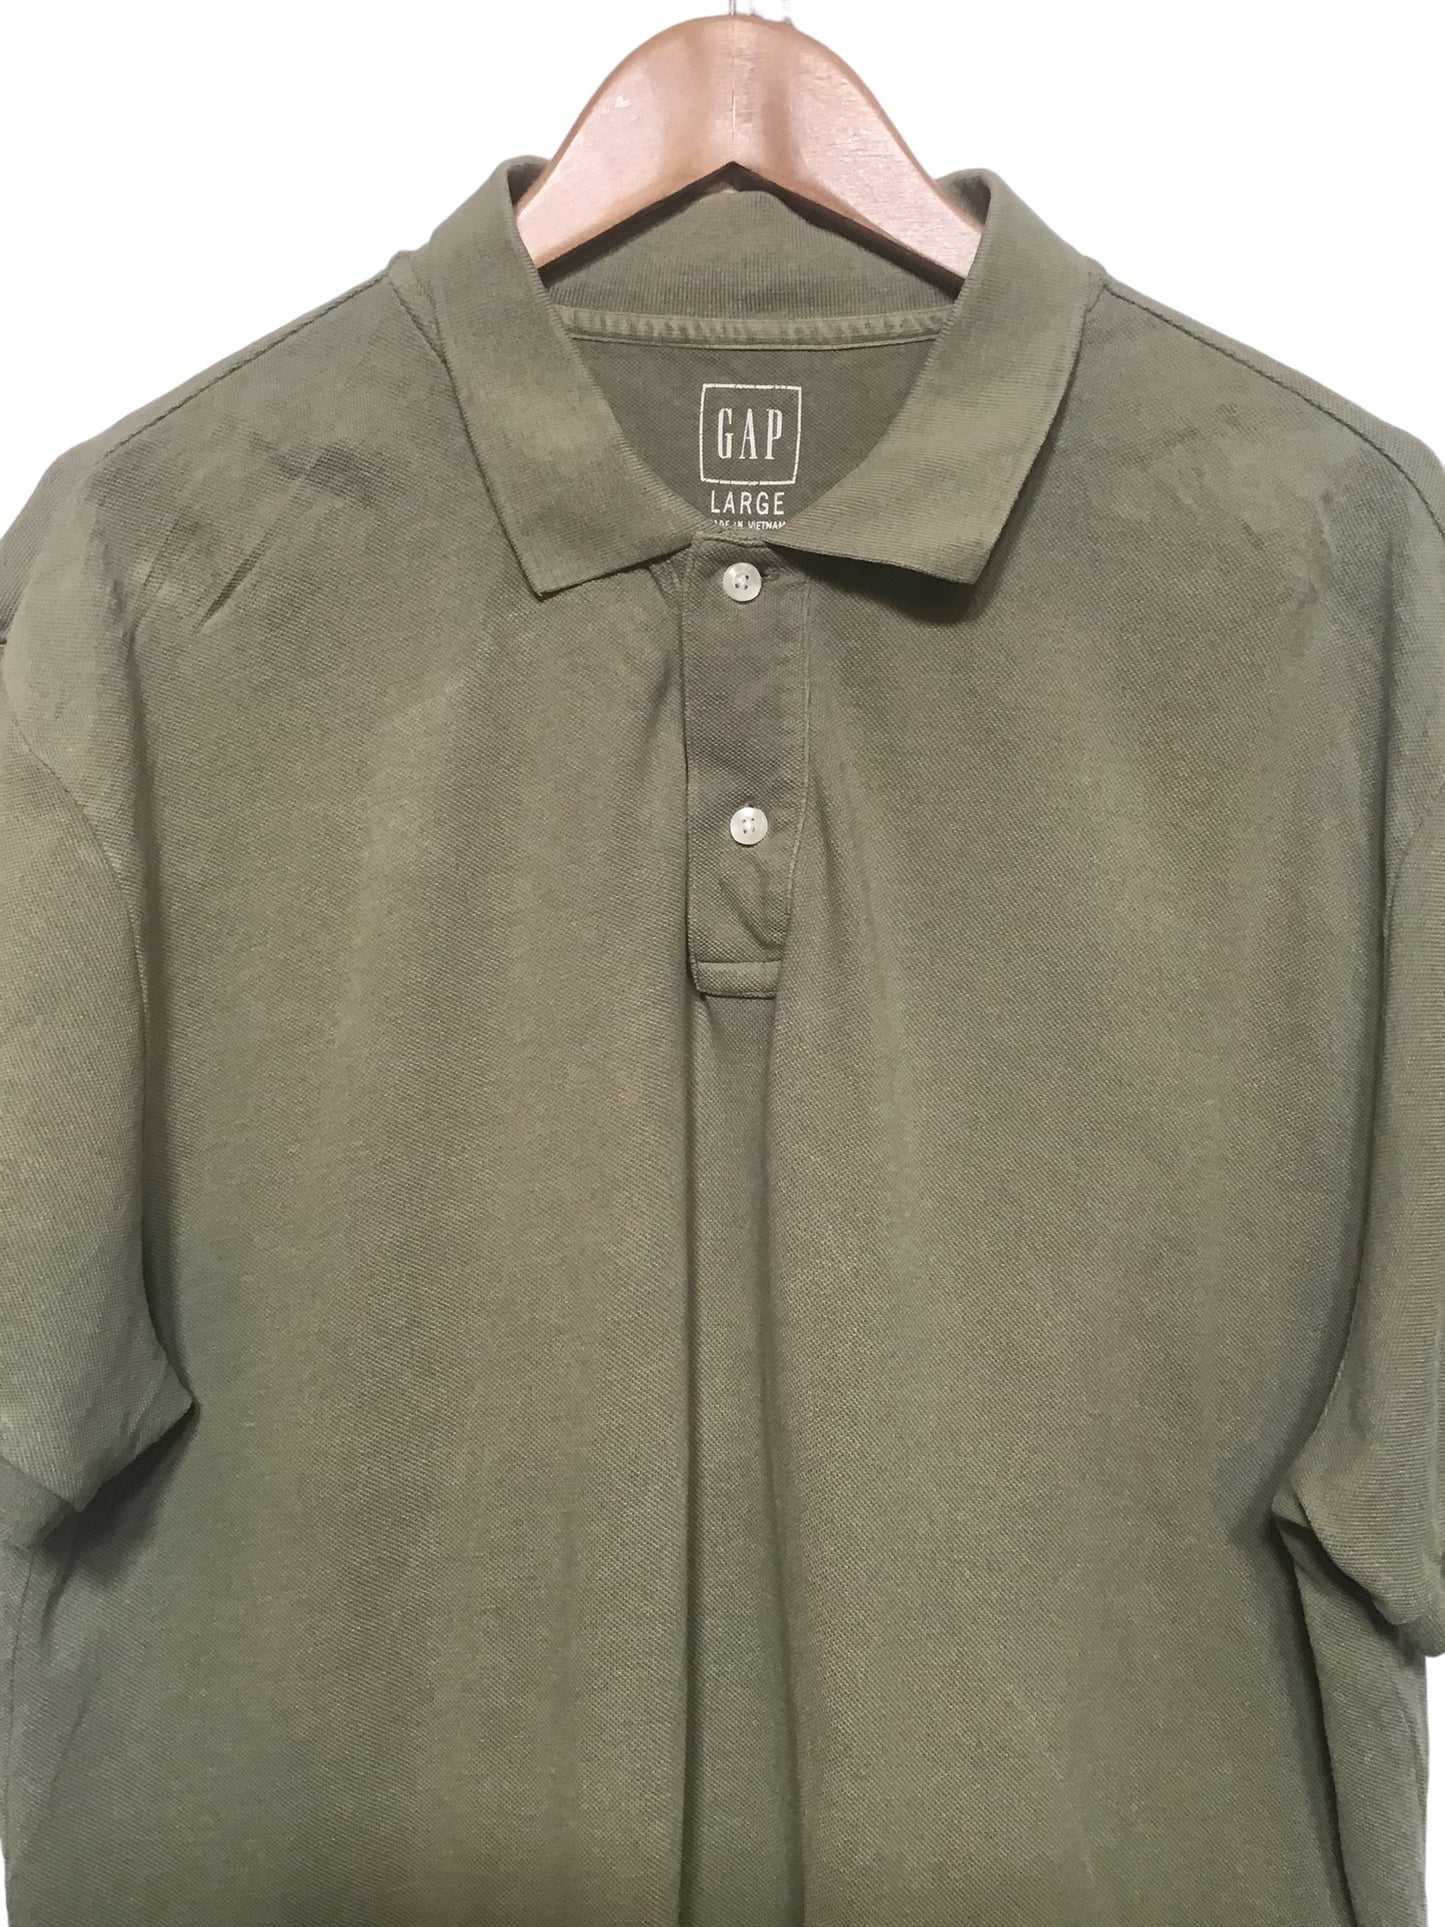 Gap Polo Shirt (Size L)